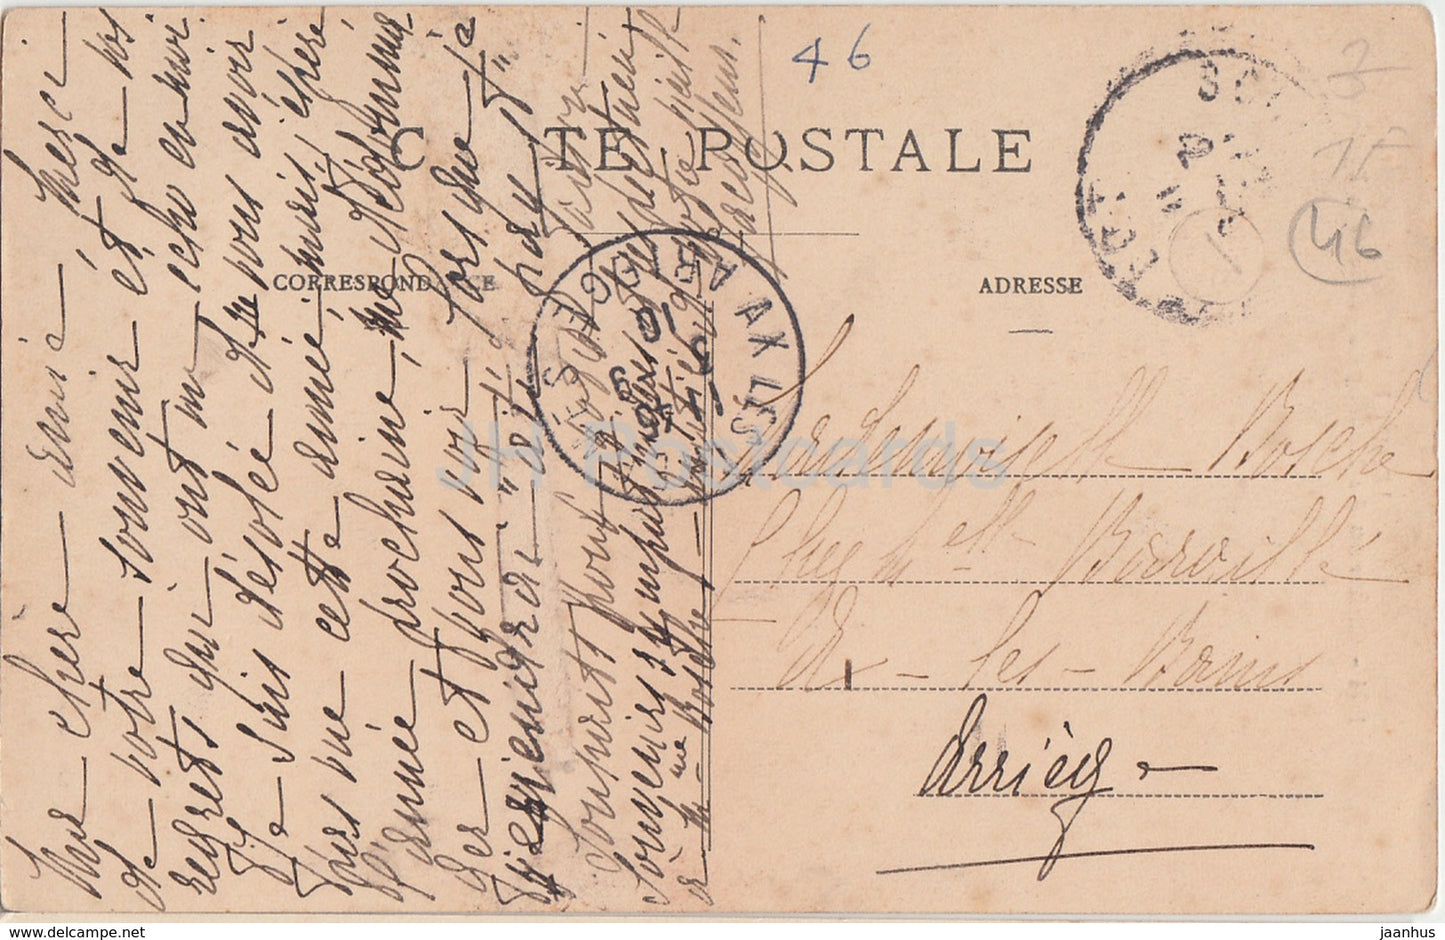 Le Lot Illustre - Château de Latreyne - Bords de la Dordogne - château - 1154 - carte postale ancienne - 1910 - France - occasion